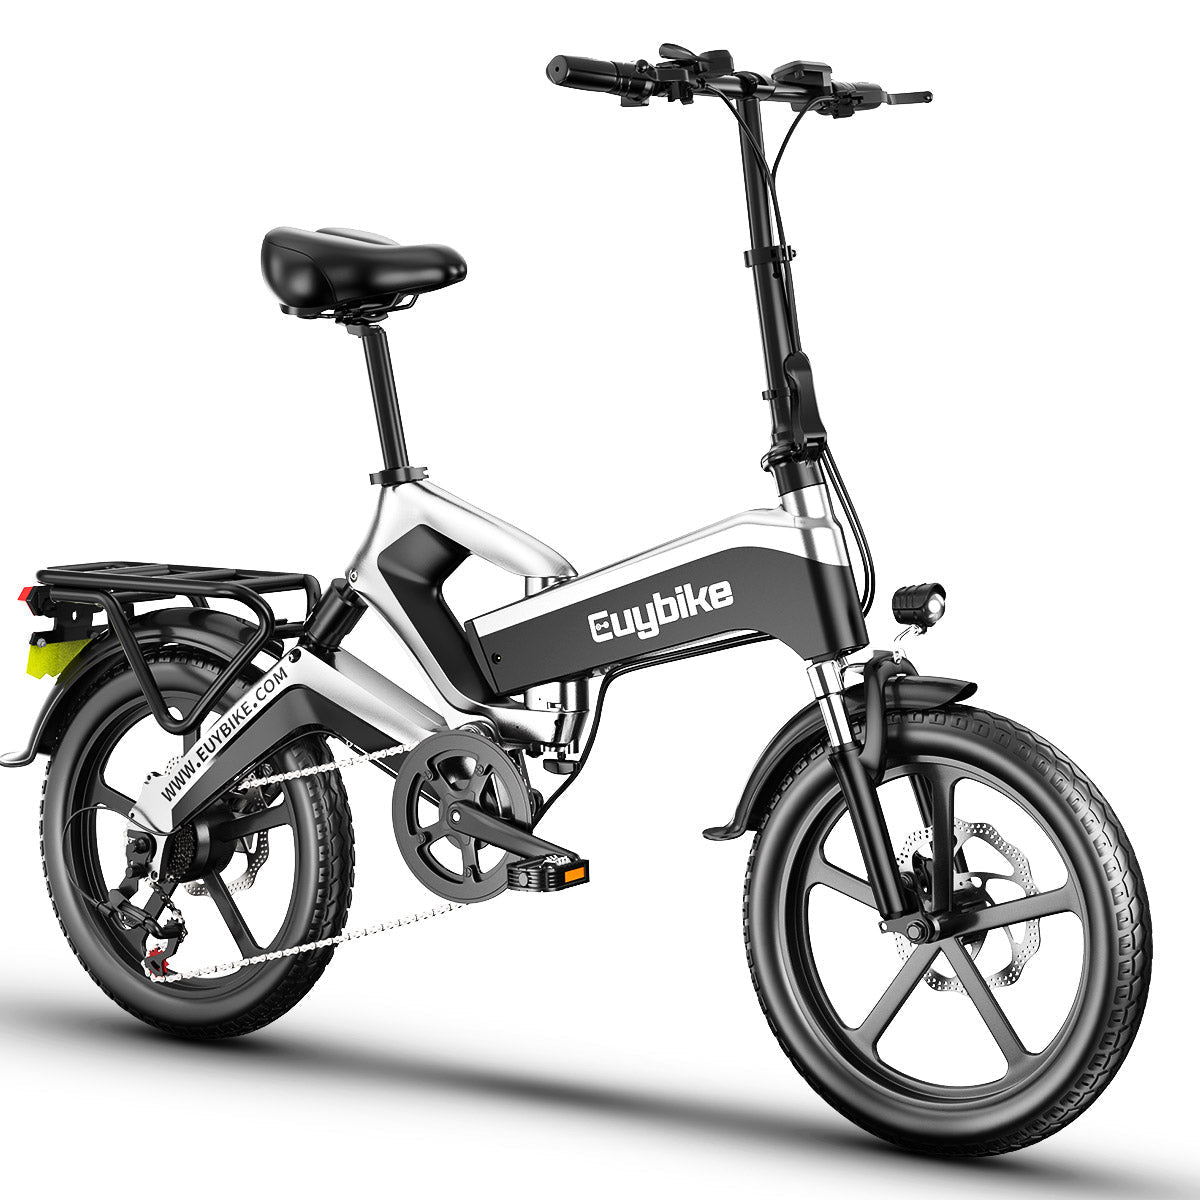  EUYBIKE K6 Bicicleta eléctrica plegable para adultos, aleación  de magnesio, 500 W, 21 MPH, bicicletas eléctricas de montaña para adultos  con celdas LG de 48 V 12.8 Ah, batería extraíble, bicicleta 